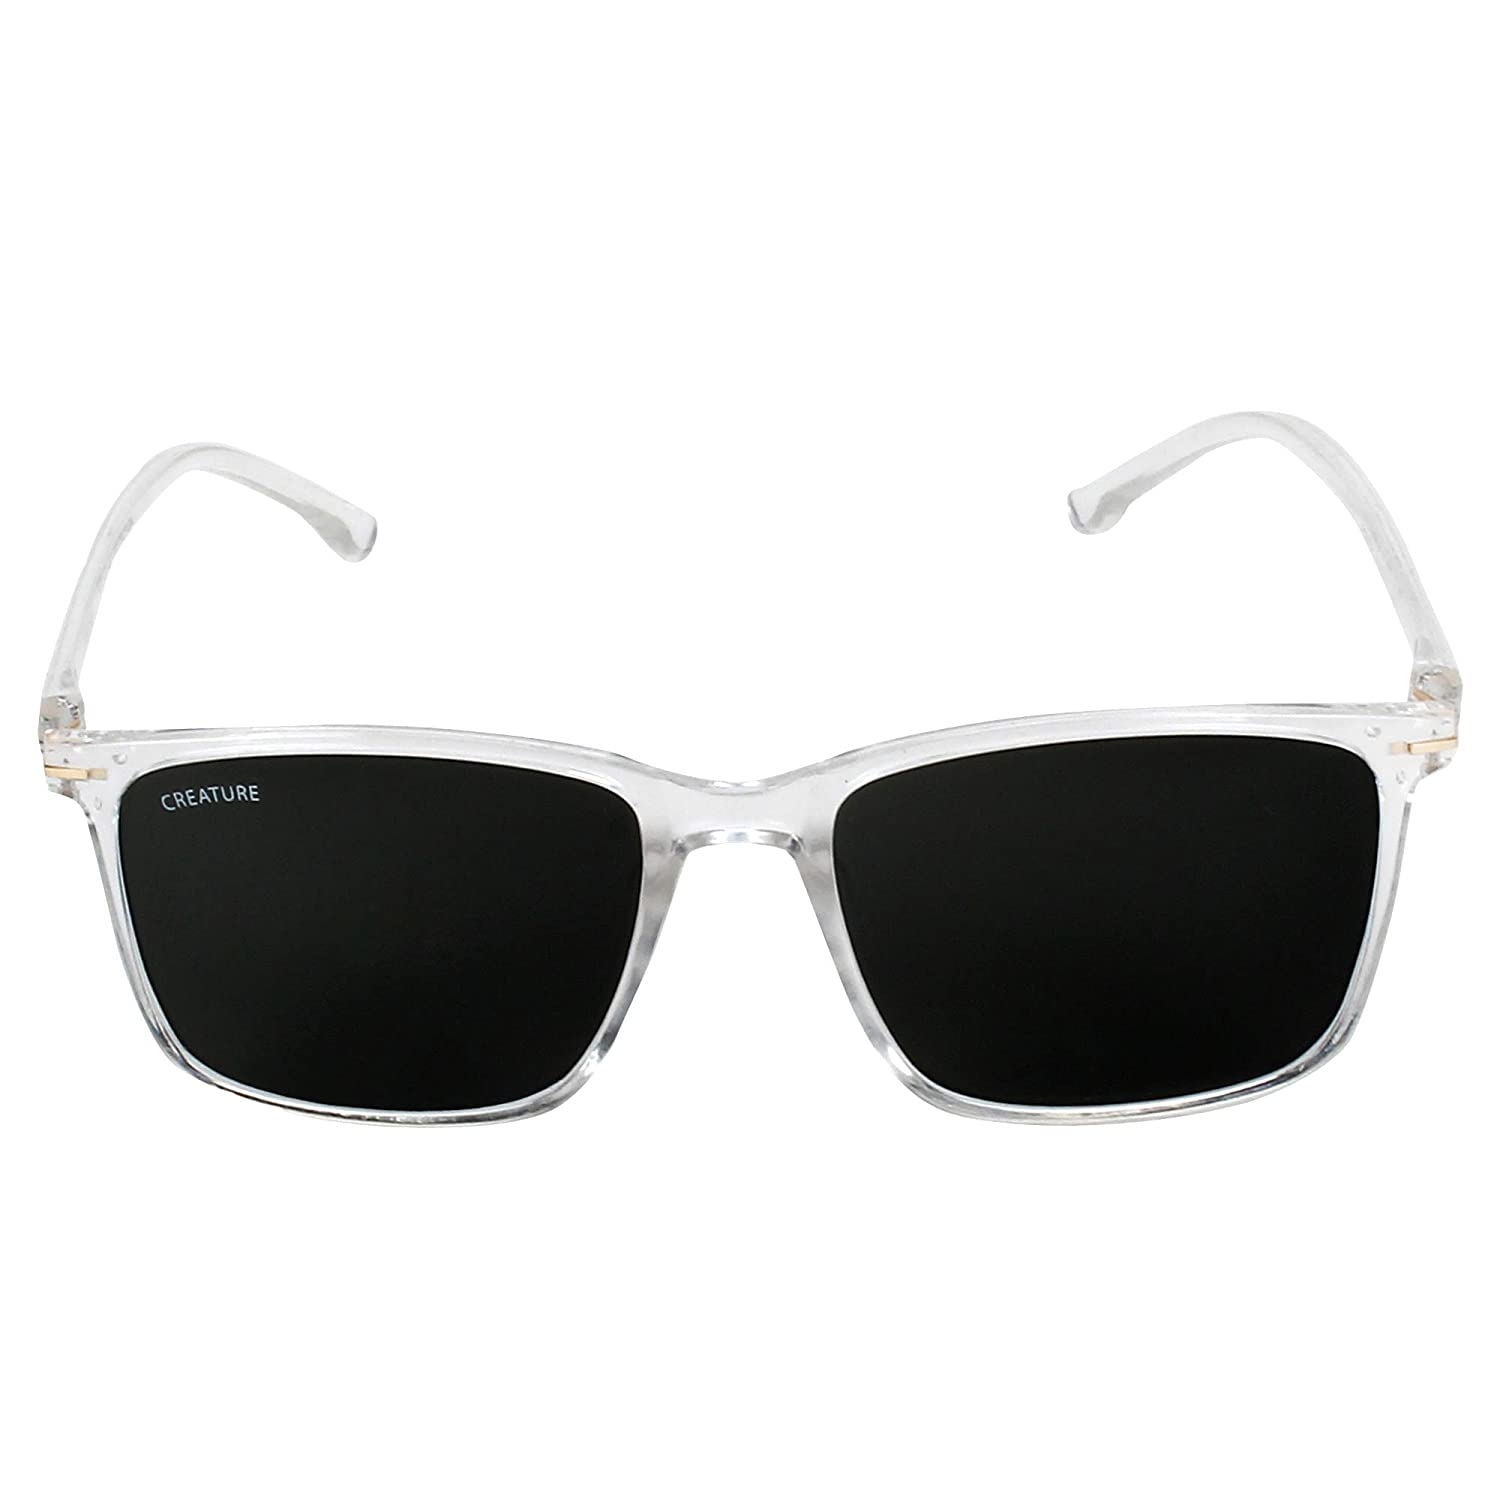 CREATURE | CREATURE Matt Finish Club Master UV Protected Unisex Sunglasses (Lens-Black|Frame-Transparent)